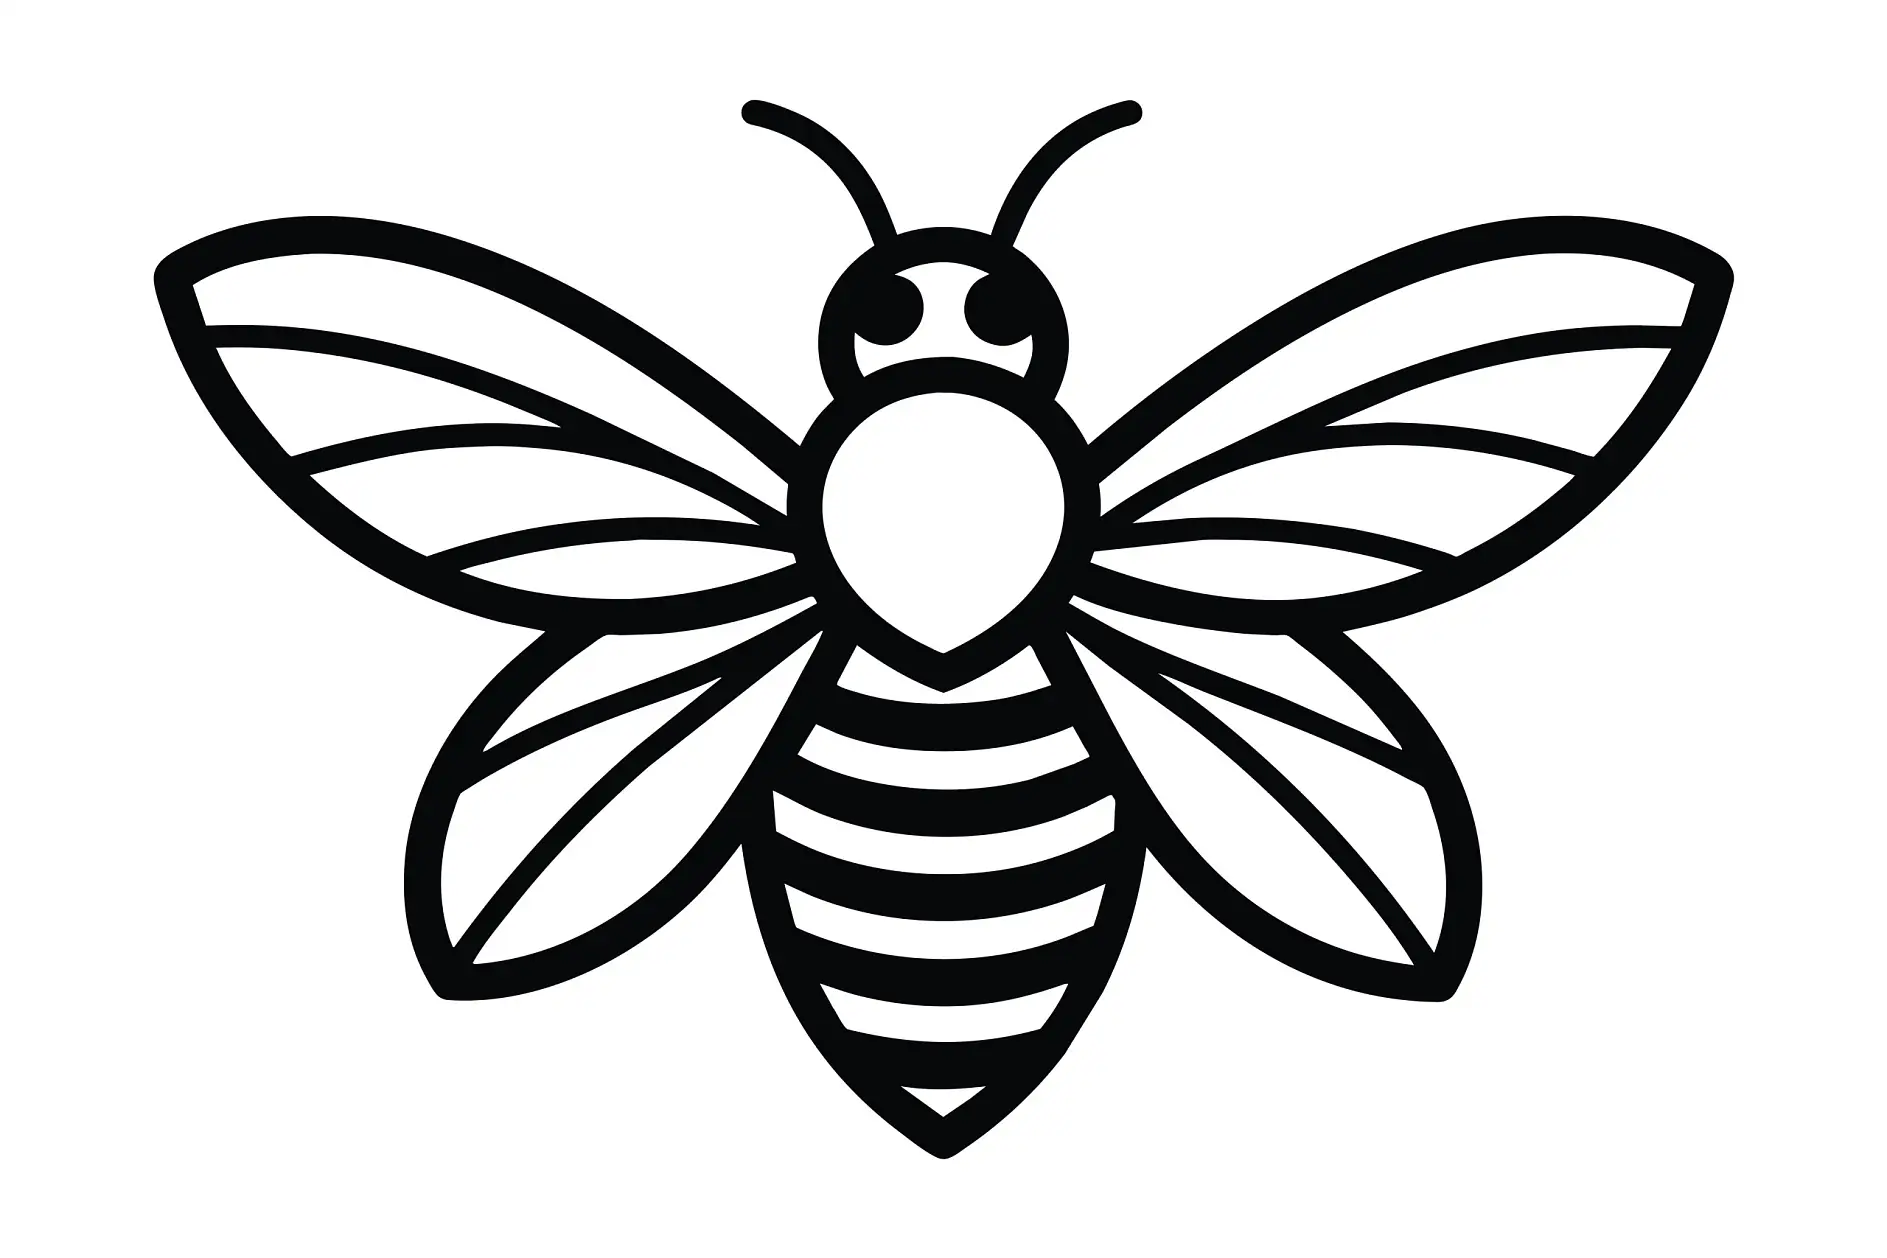 Ausmalbild Biene mit ausgebreiteten Flügeln und gestreiftem Körper